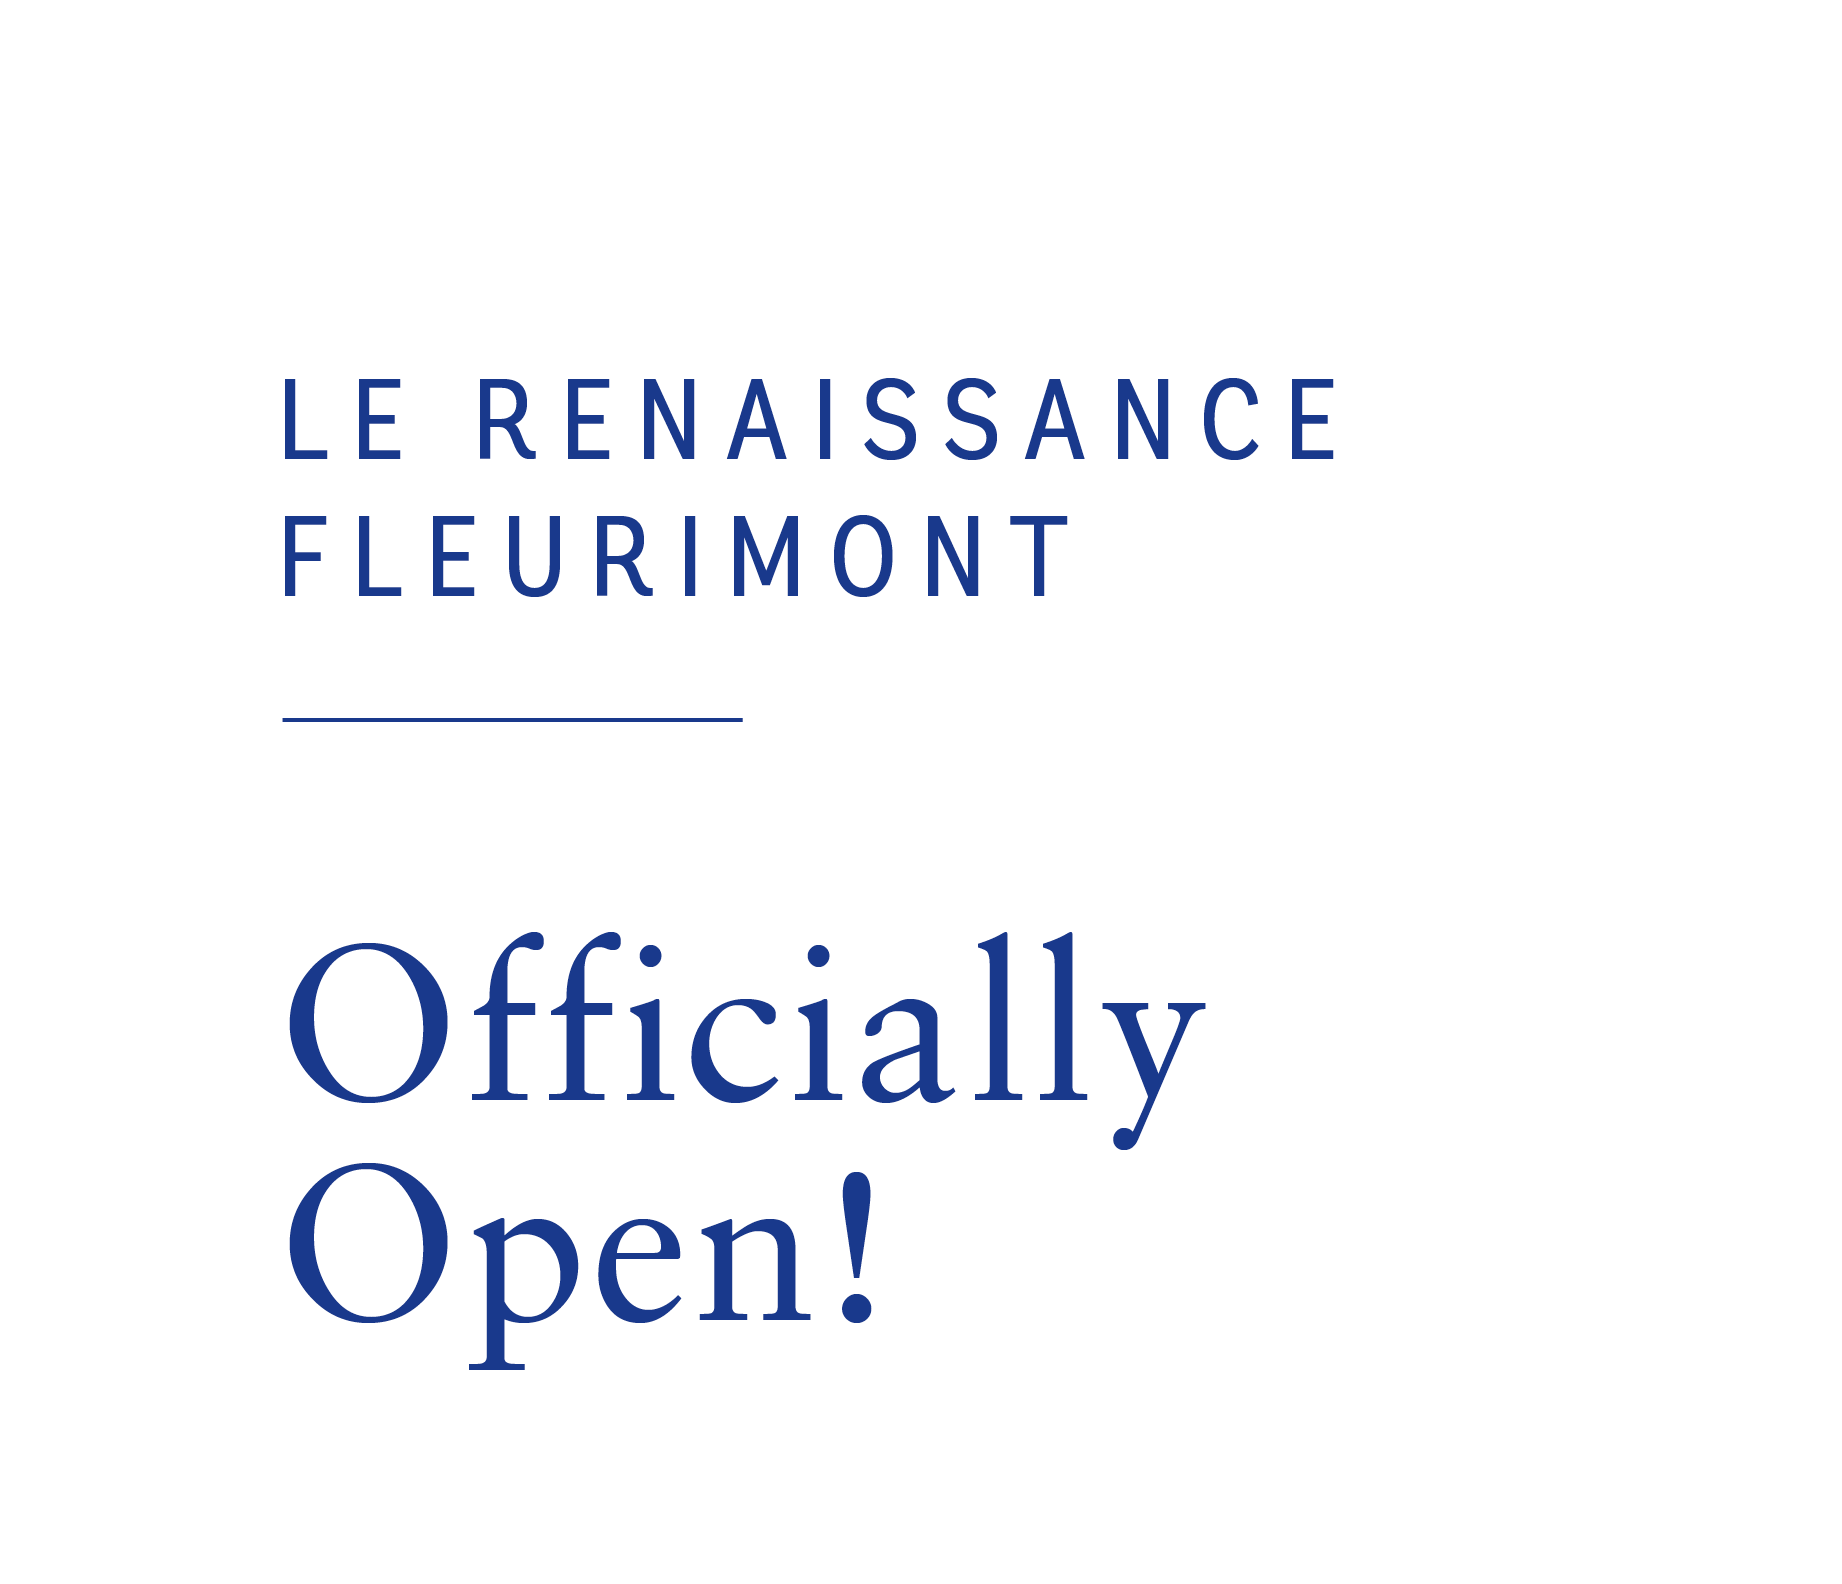 Le Renaissance Fleurimont - Officially open